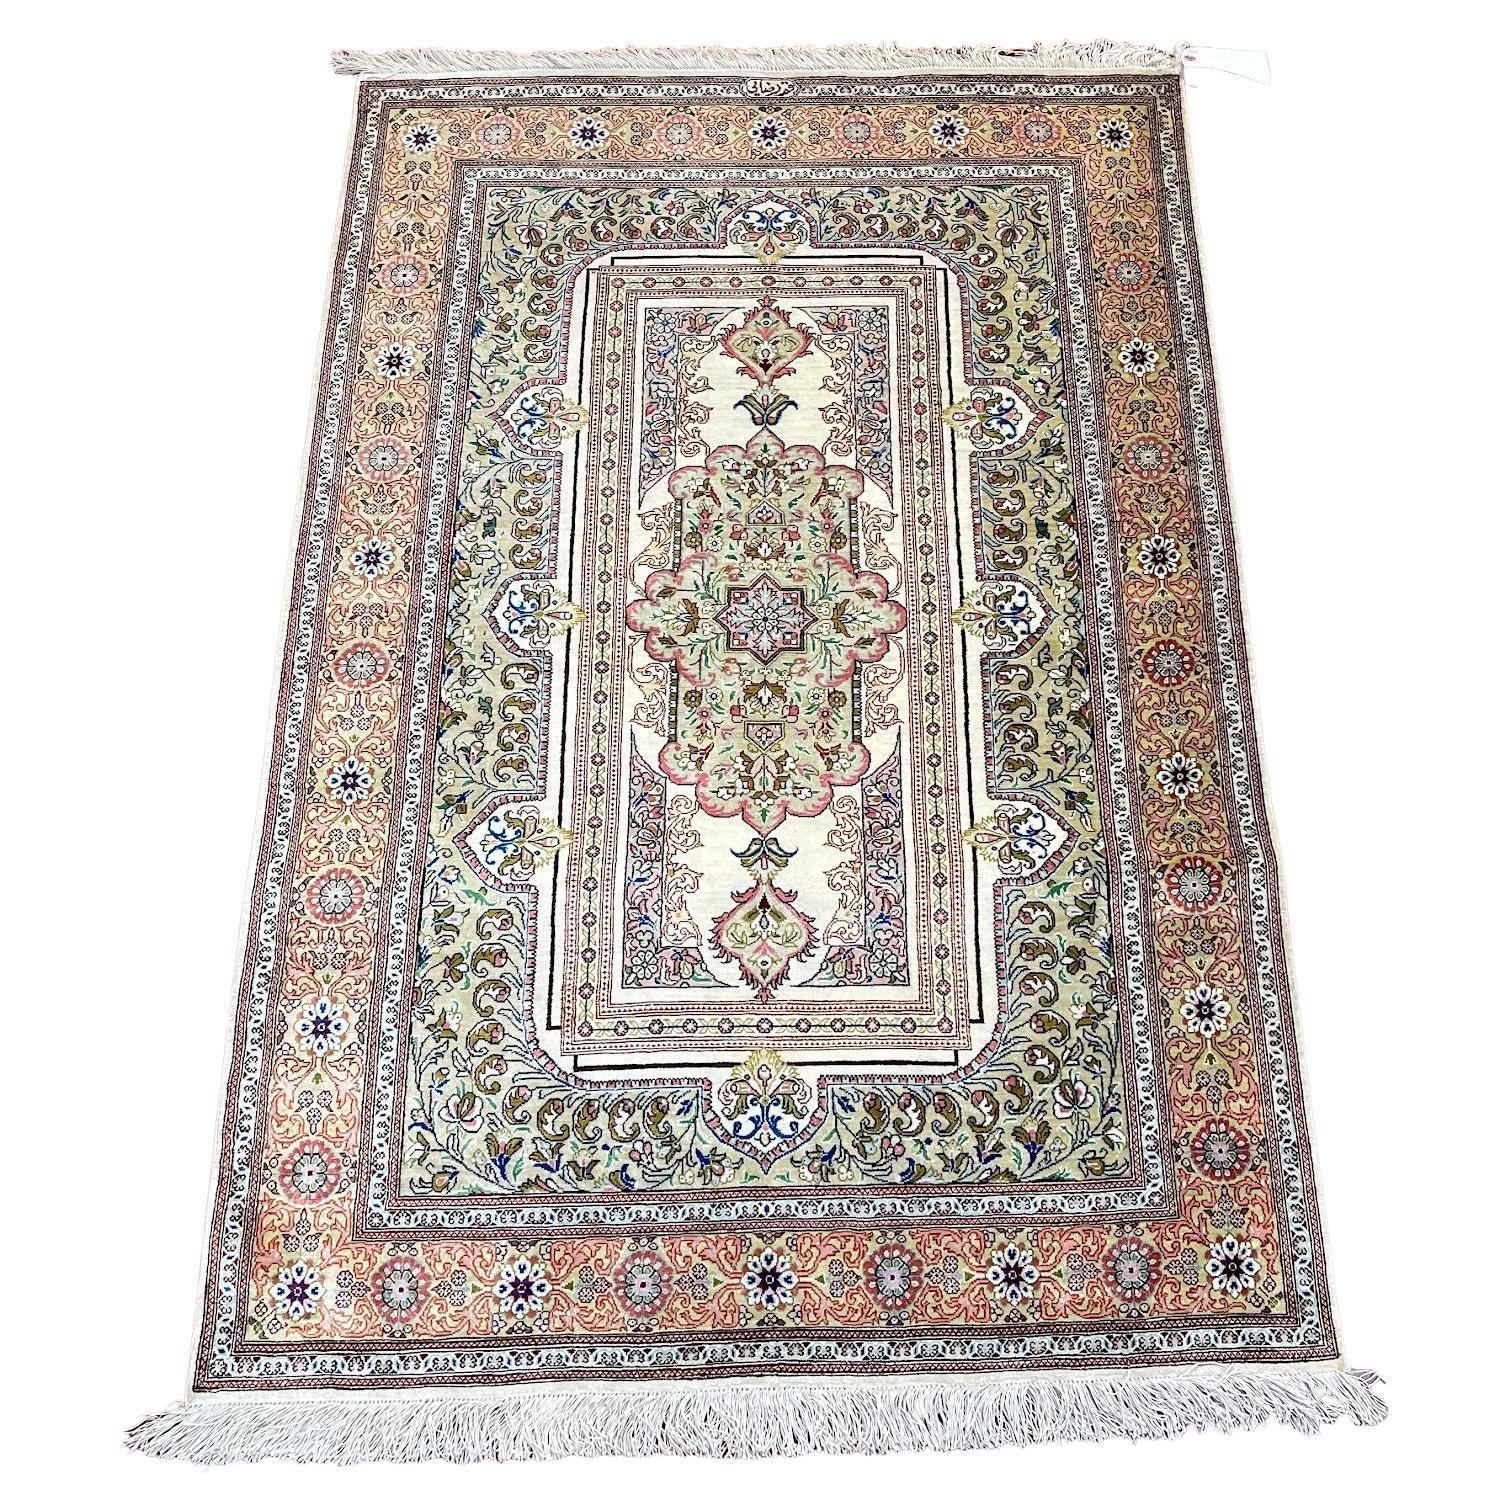 Äußerst feiner persischer Qum-Teppich aus Seide